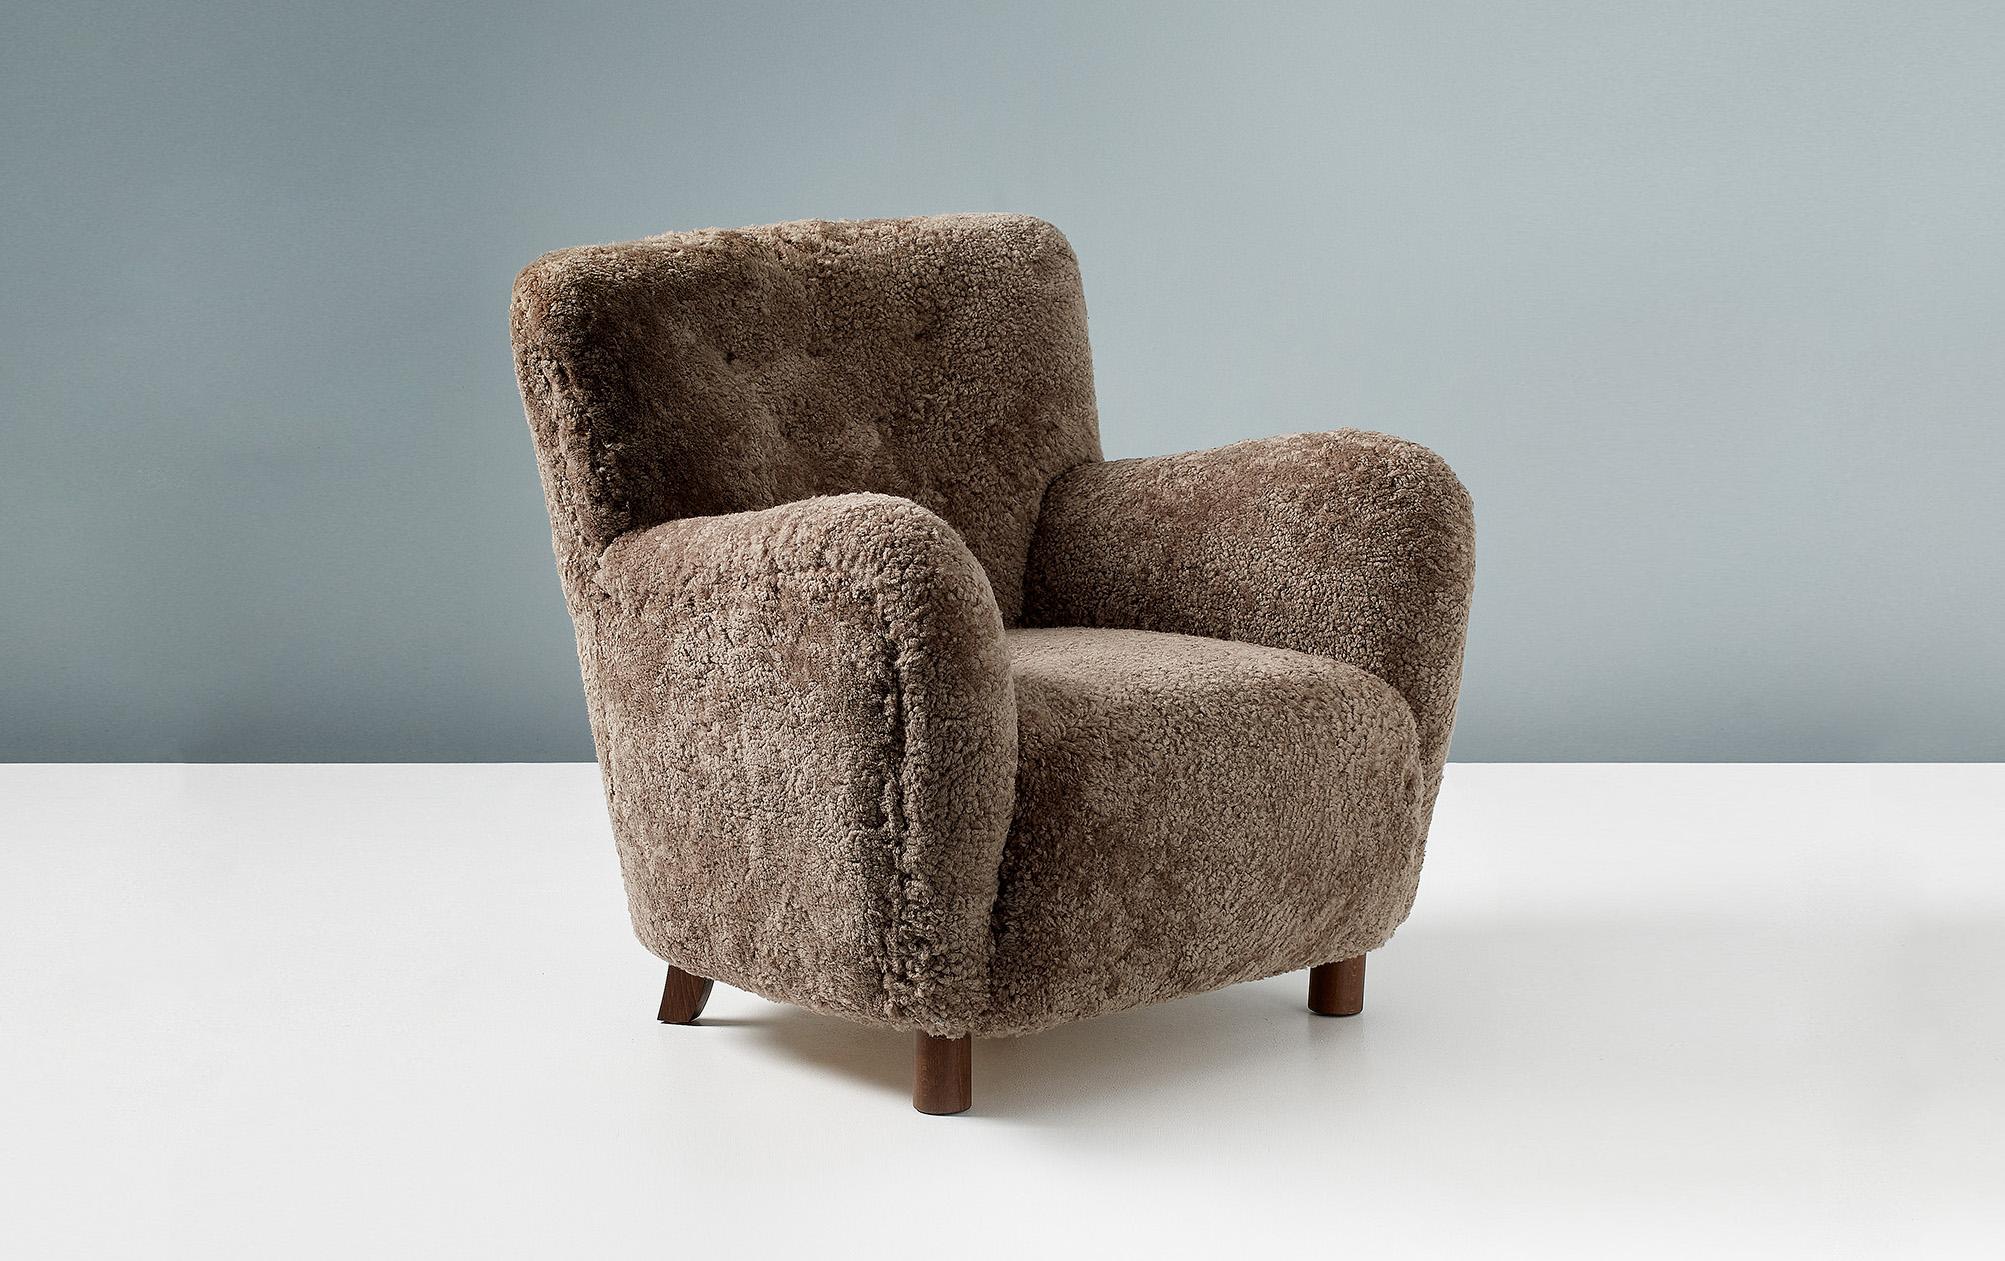 Chaise longue modèle 54 de Dagmar Design/One

Une chaise longue sur mesure développée et fabriquée à la main dans nos ateliers à Londres avec des matériaux de la plus haute qualité. La chaise 54 est disponible sur commande dans une gamme de couleurs